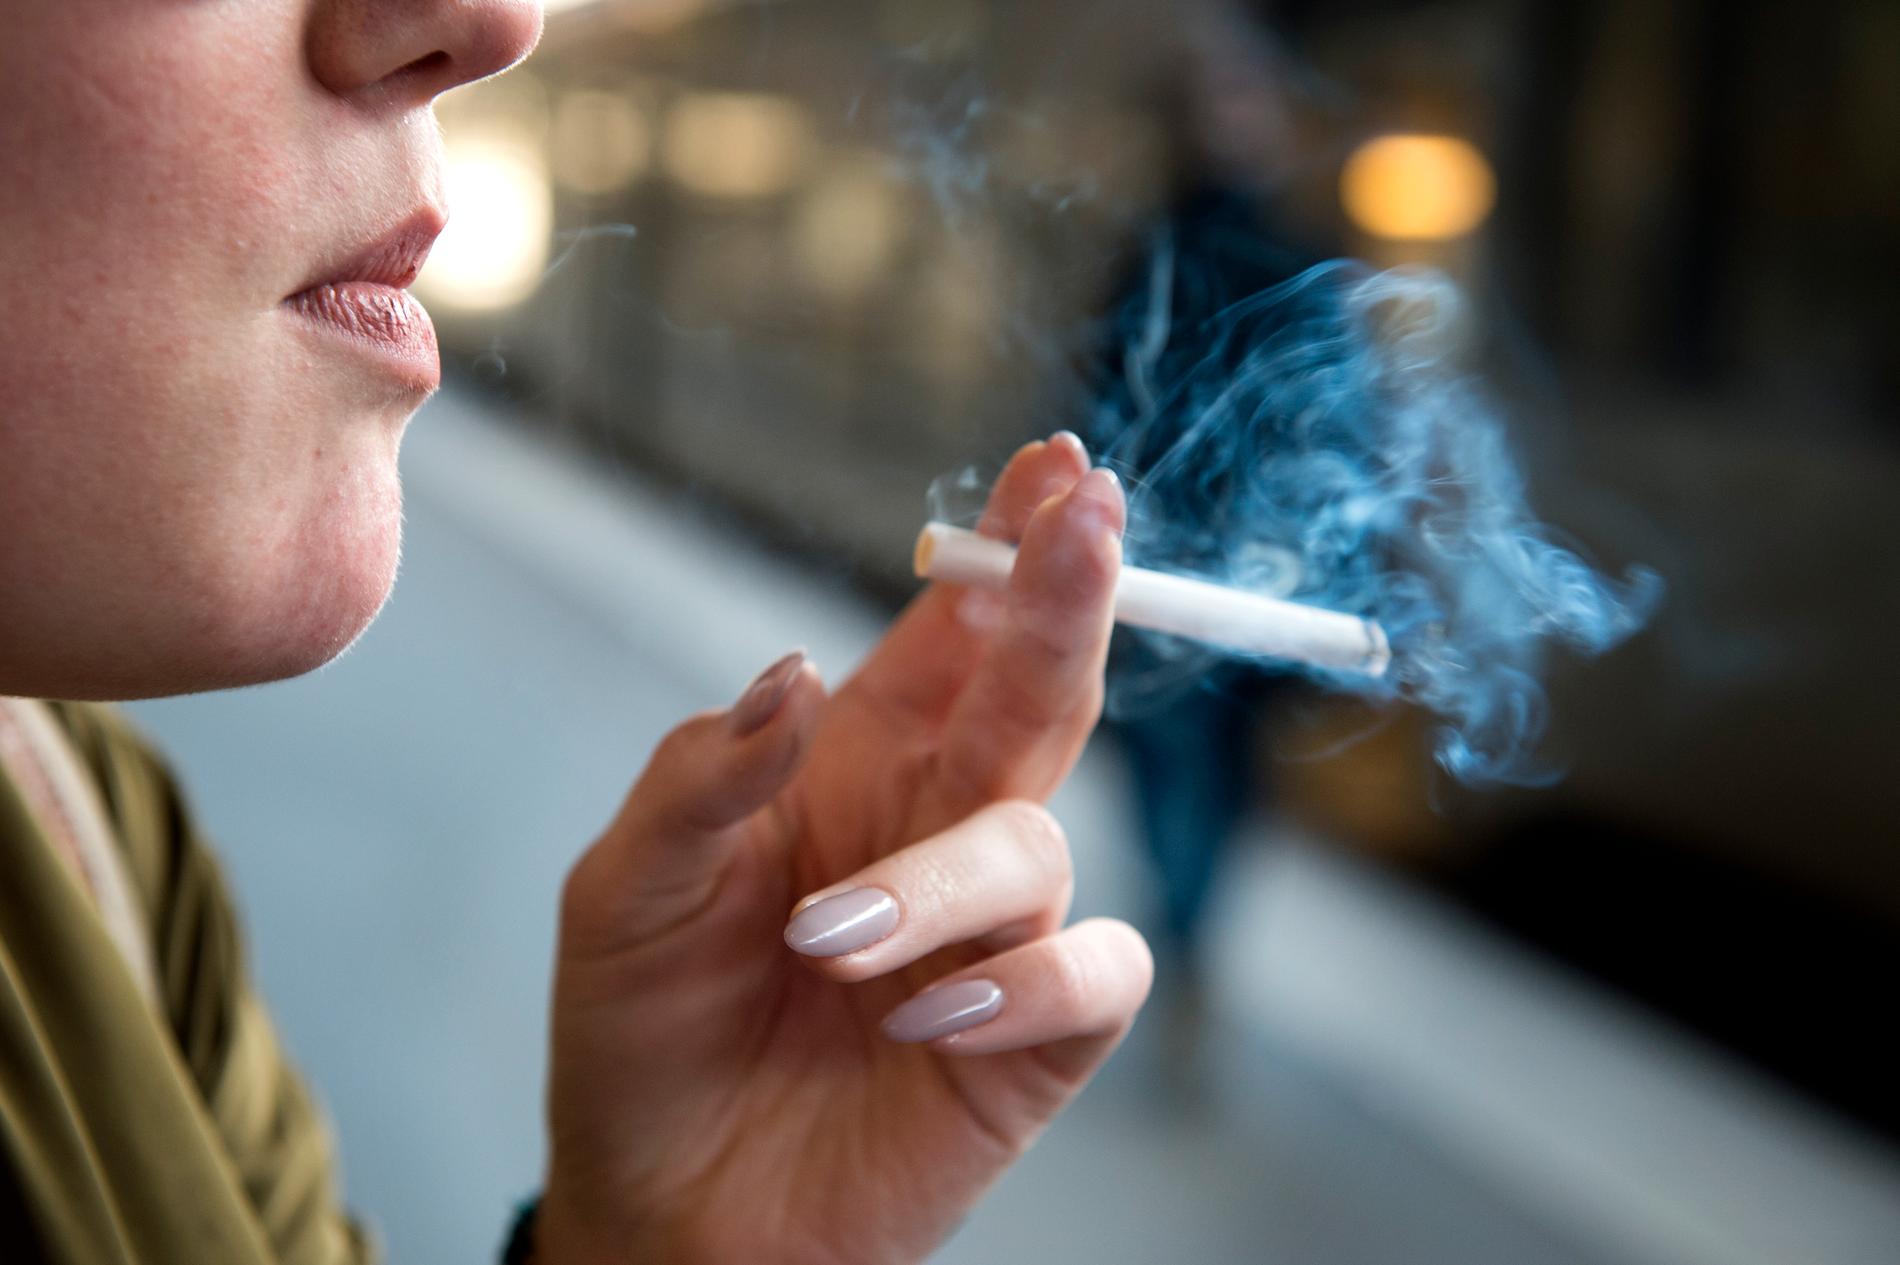 Försäljning av klickcigaretter, det vill säga cigaretter som smaksatts med mentol genom en kapsel i filtret, har förbjudits av Folkhälsomyndigheten. Arkivbild.